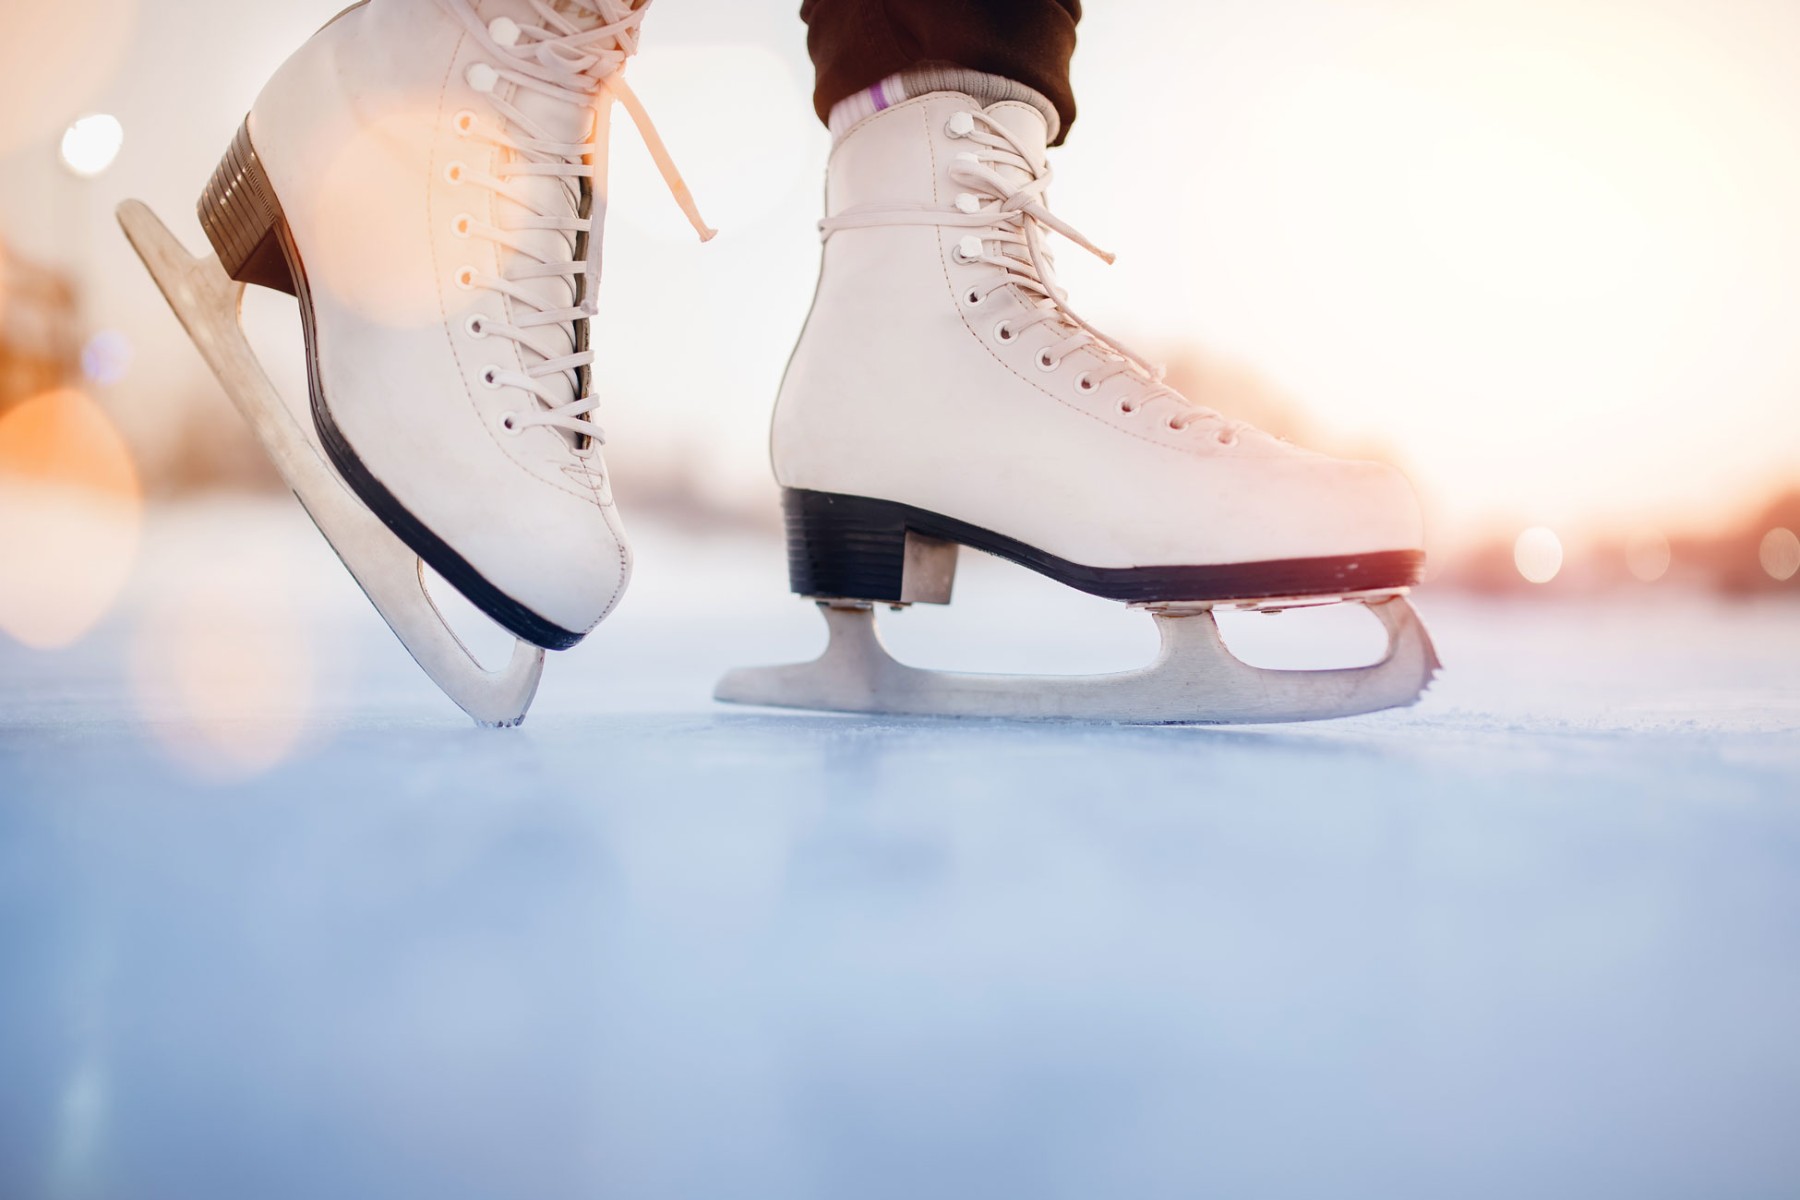 patinaje-sobre-hielo